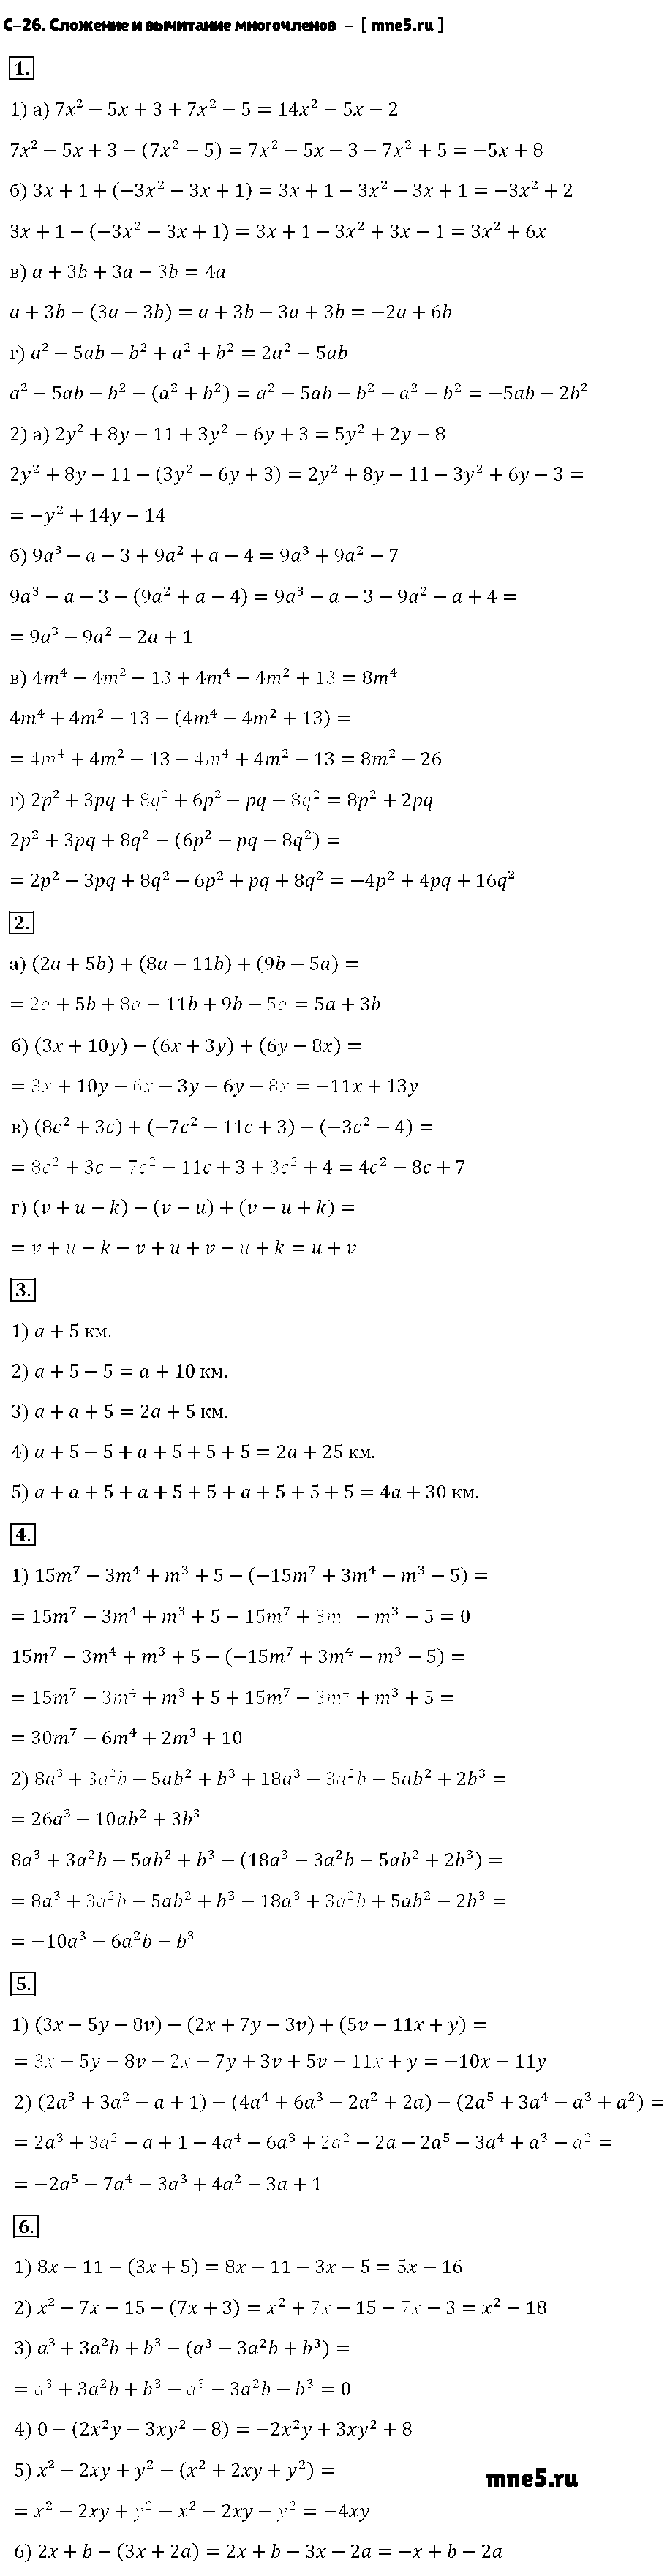 ГДЗ Алгебра 7 класс - С-26. Сложение и вычитание многочленов